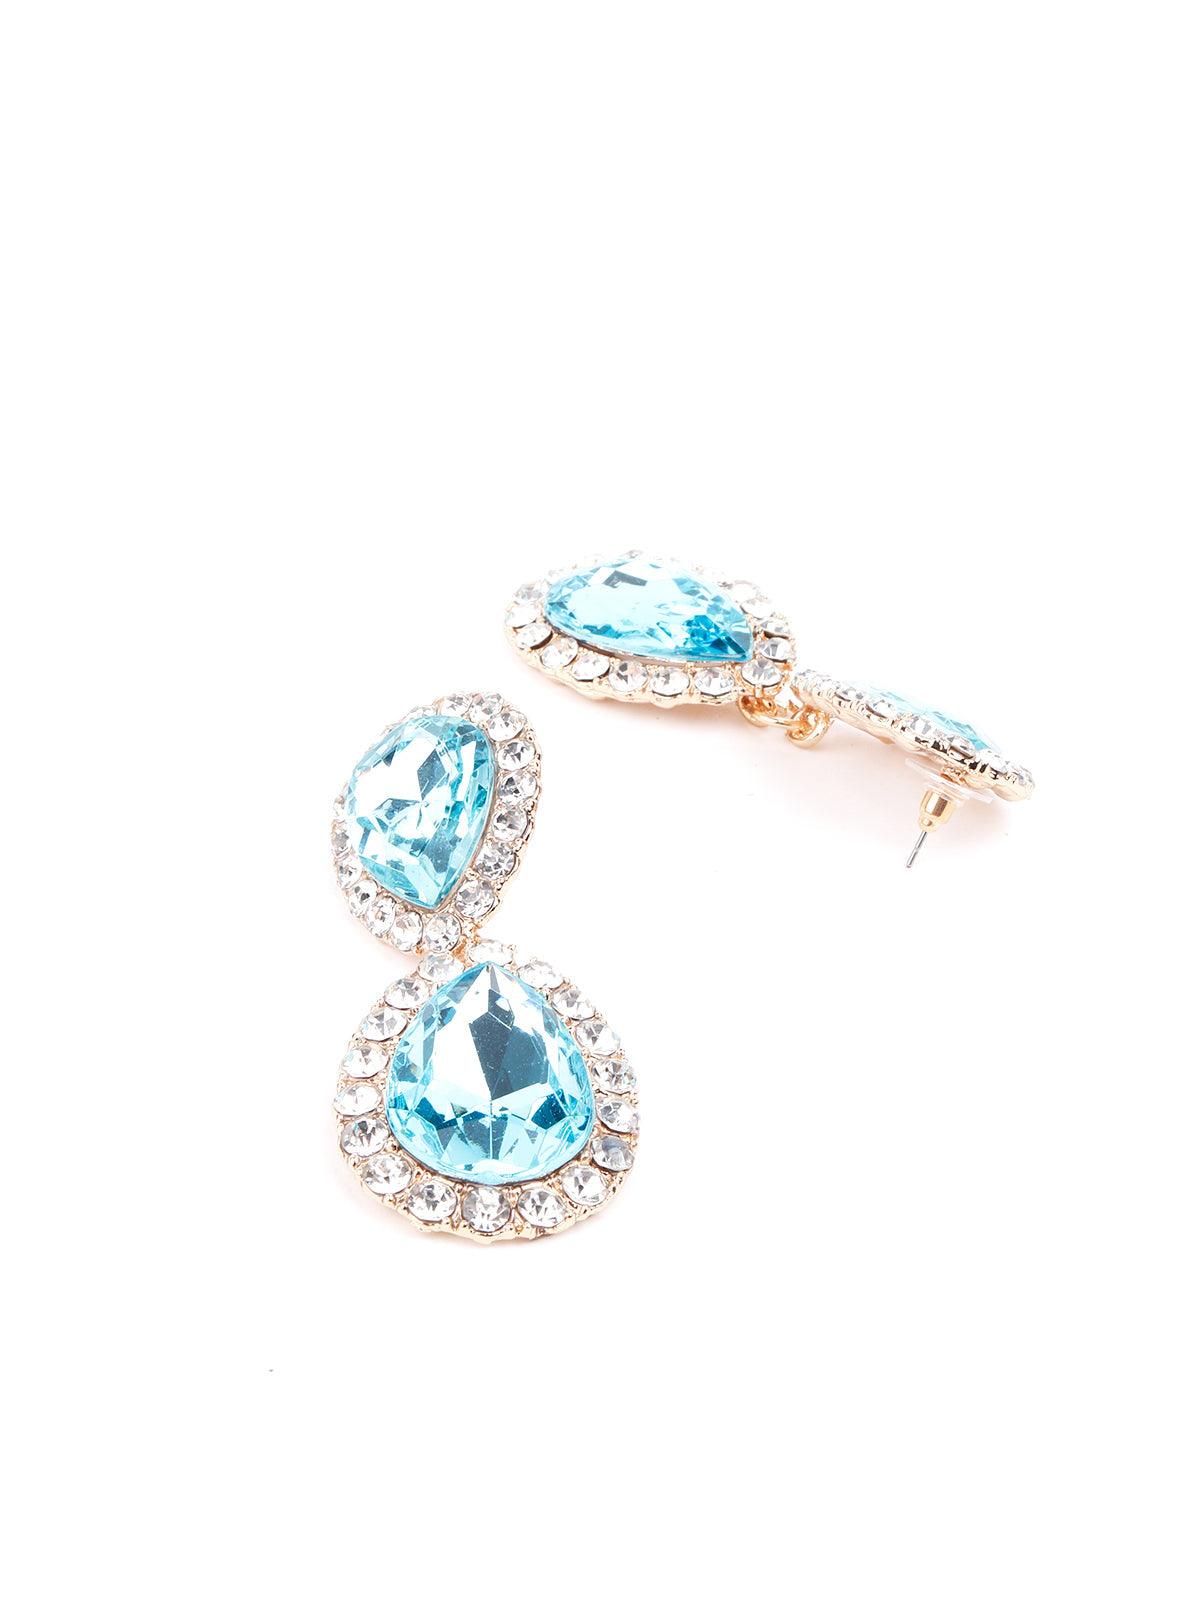 Beautiful sky blue statement drop earrings - Odette